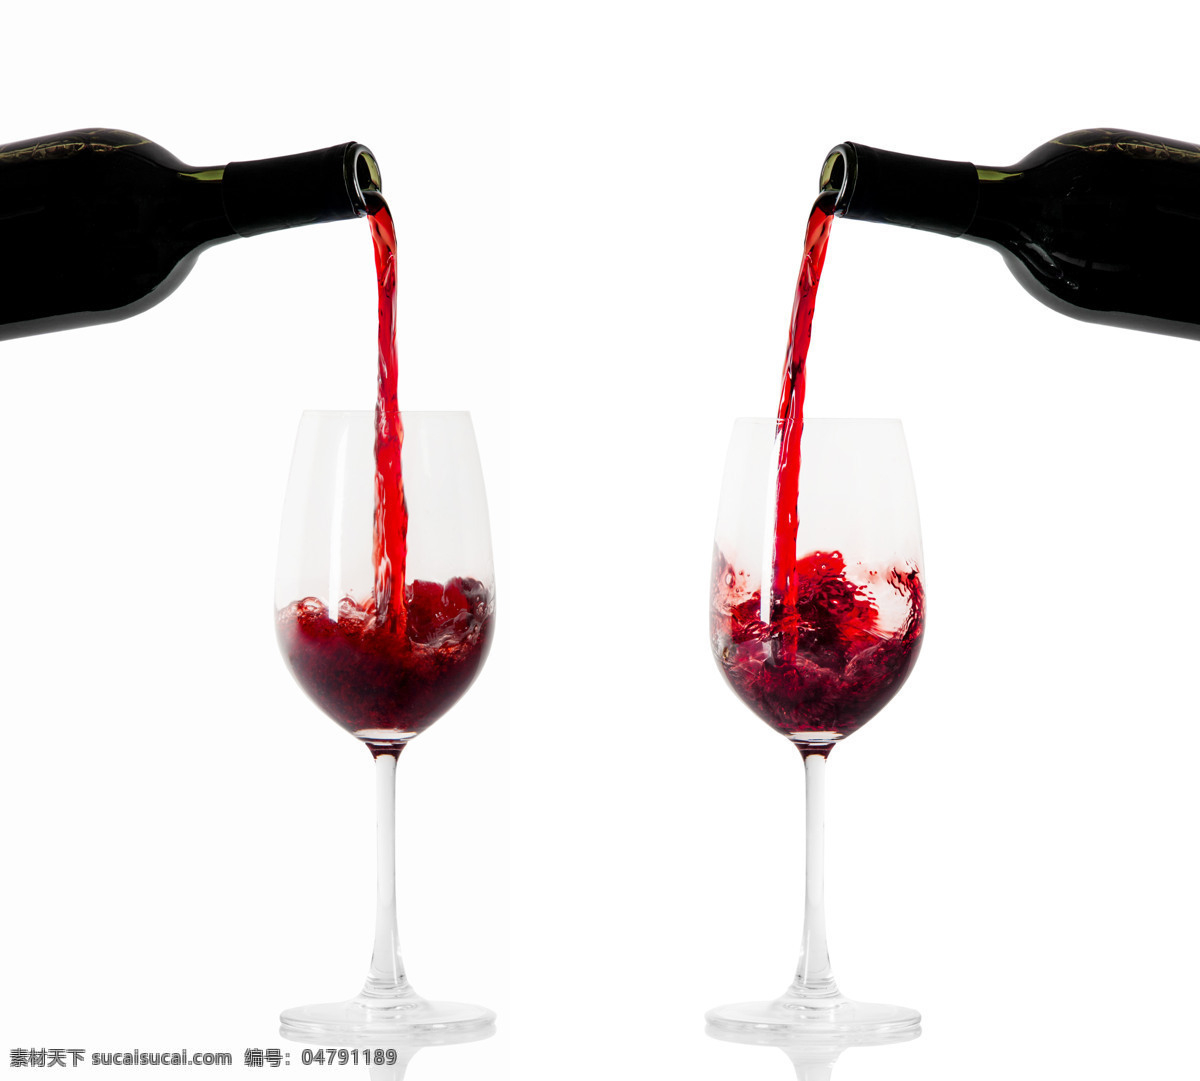 倒 红酒 倒红酒 葡萄酒 高脚杯 玻璃酒杯 杯子 酒瓶 酒类图片 餐饮美食